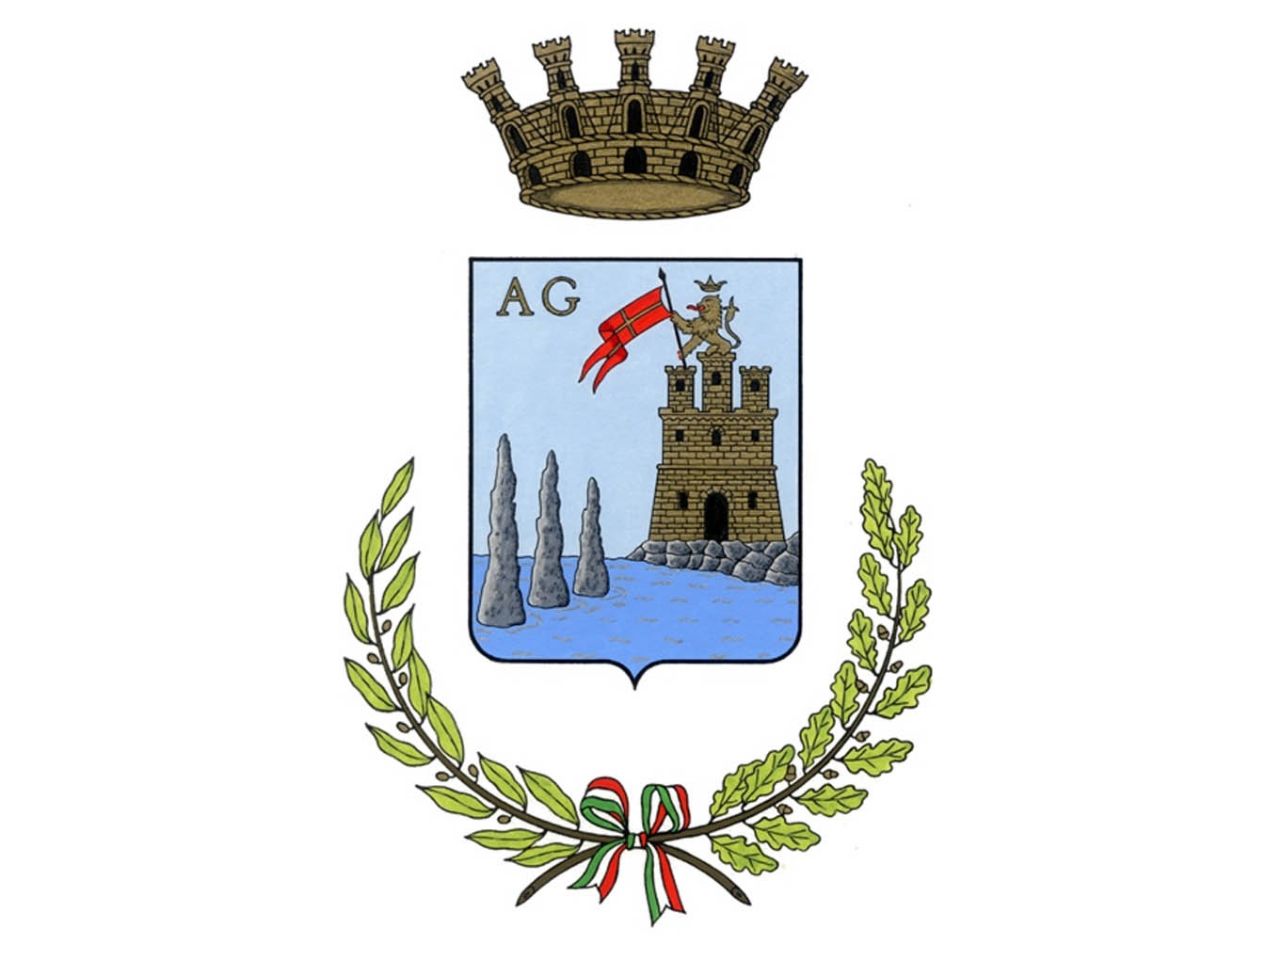 Ачиреале — провинциальный король Ачиреале, Италия